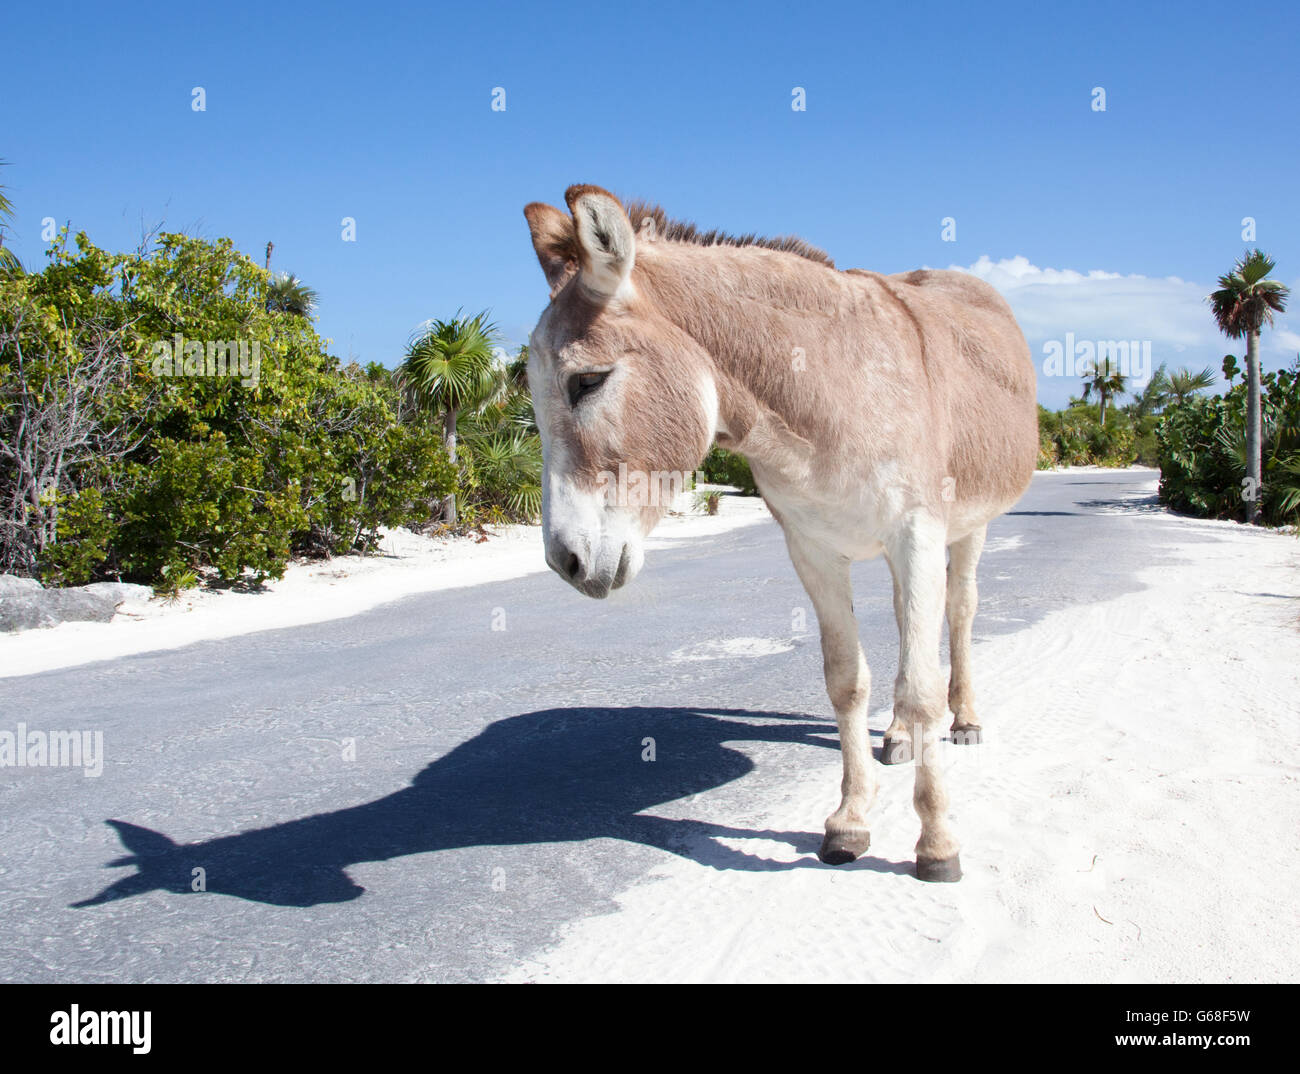 The donkey walking along the road by himself (Half Moon Cay, The Bahamas). Stock Photo